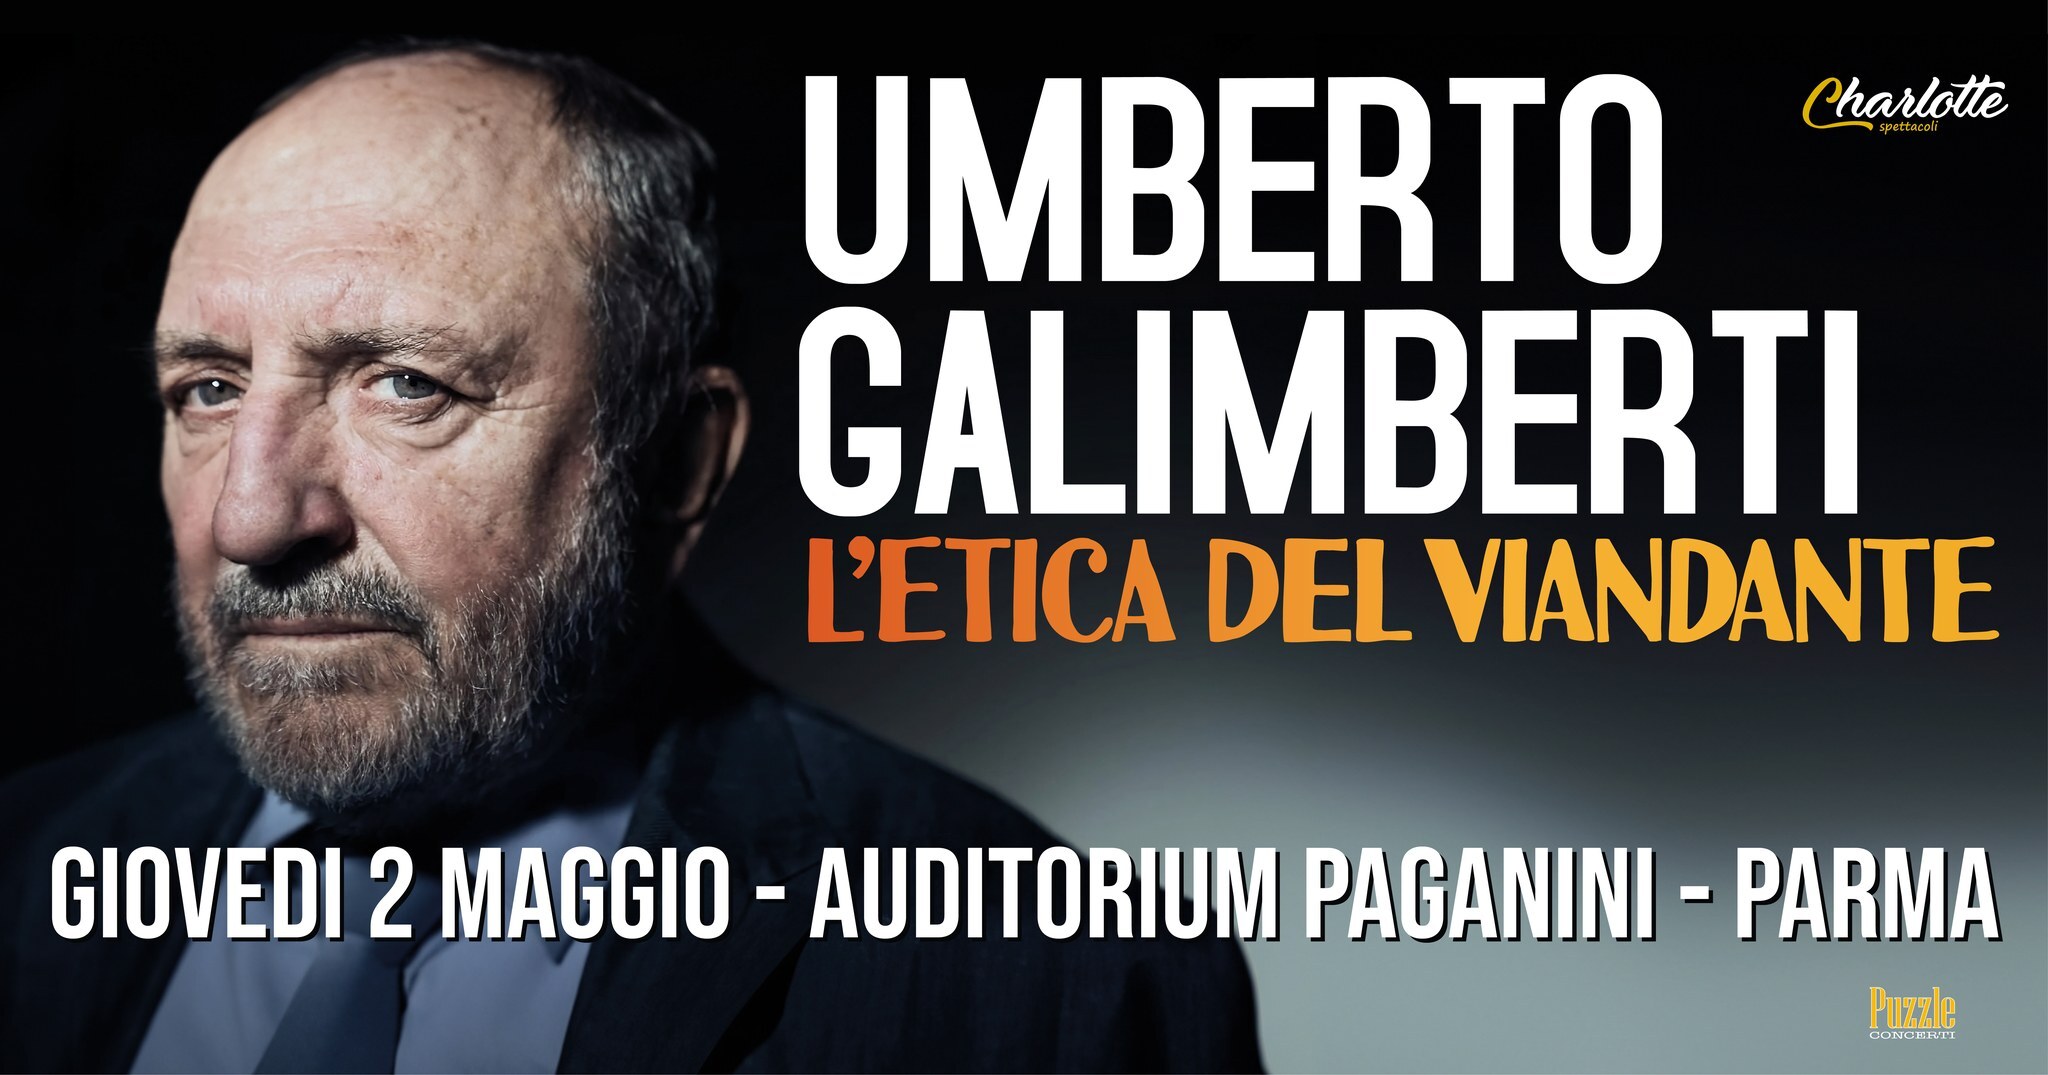 UMBERTO GALIMBERTI  "L'ETICA DEL VIANDANTE"  all' Auditorium Paganini, Parma